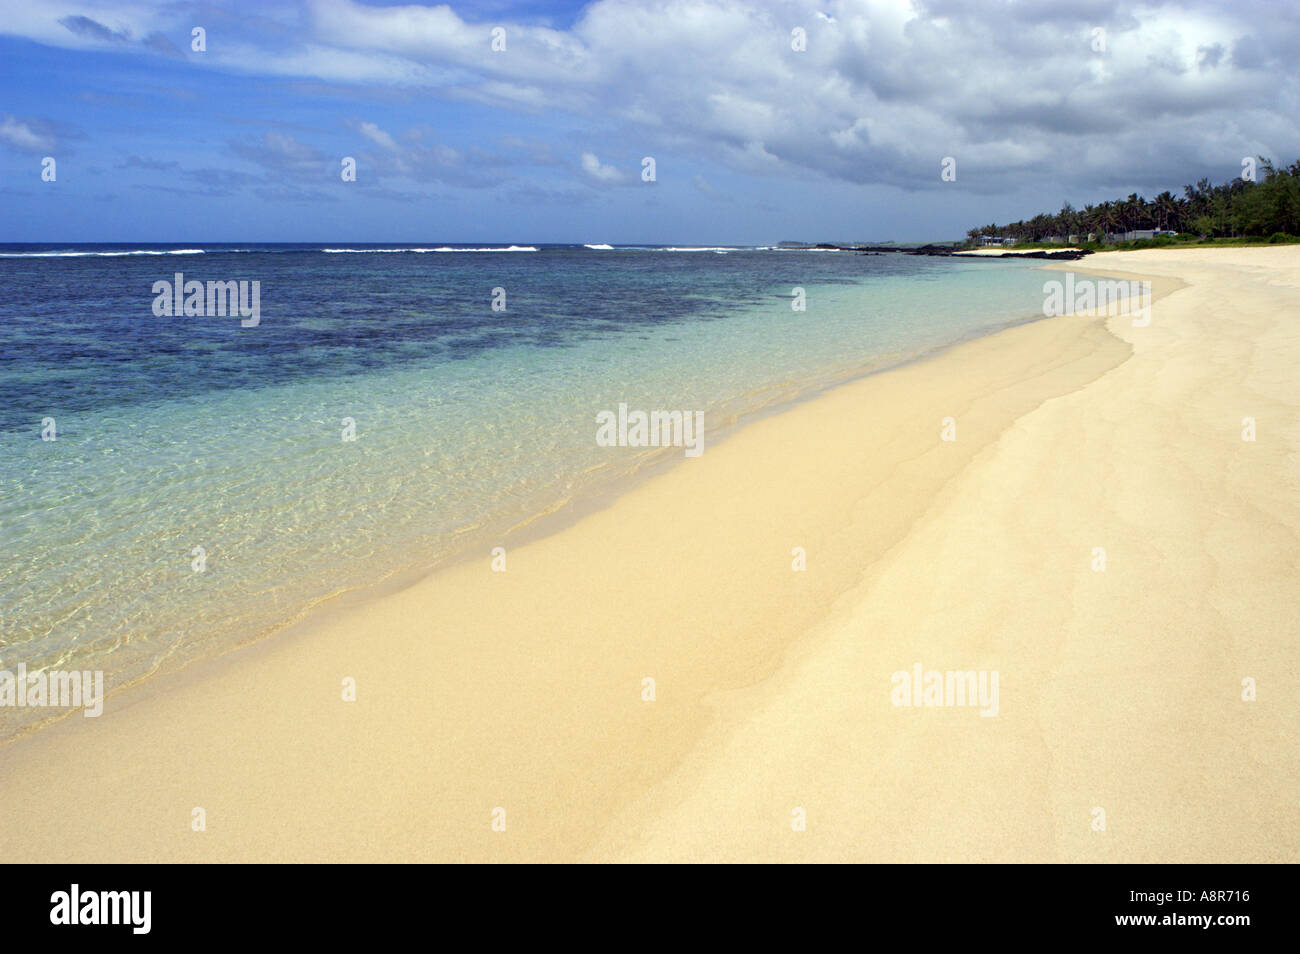 Paradisiaca spiaggia sabbiosa Foto Stock